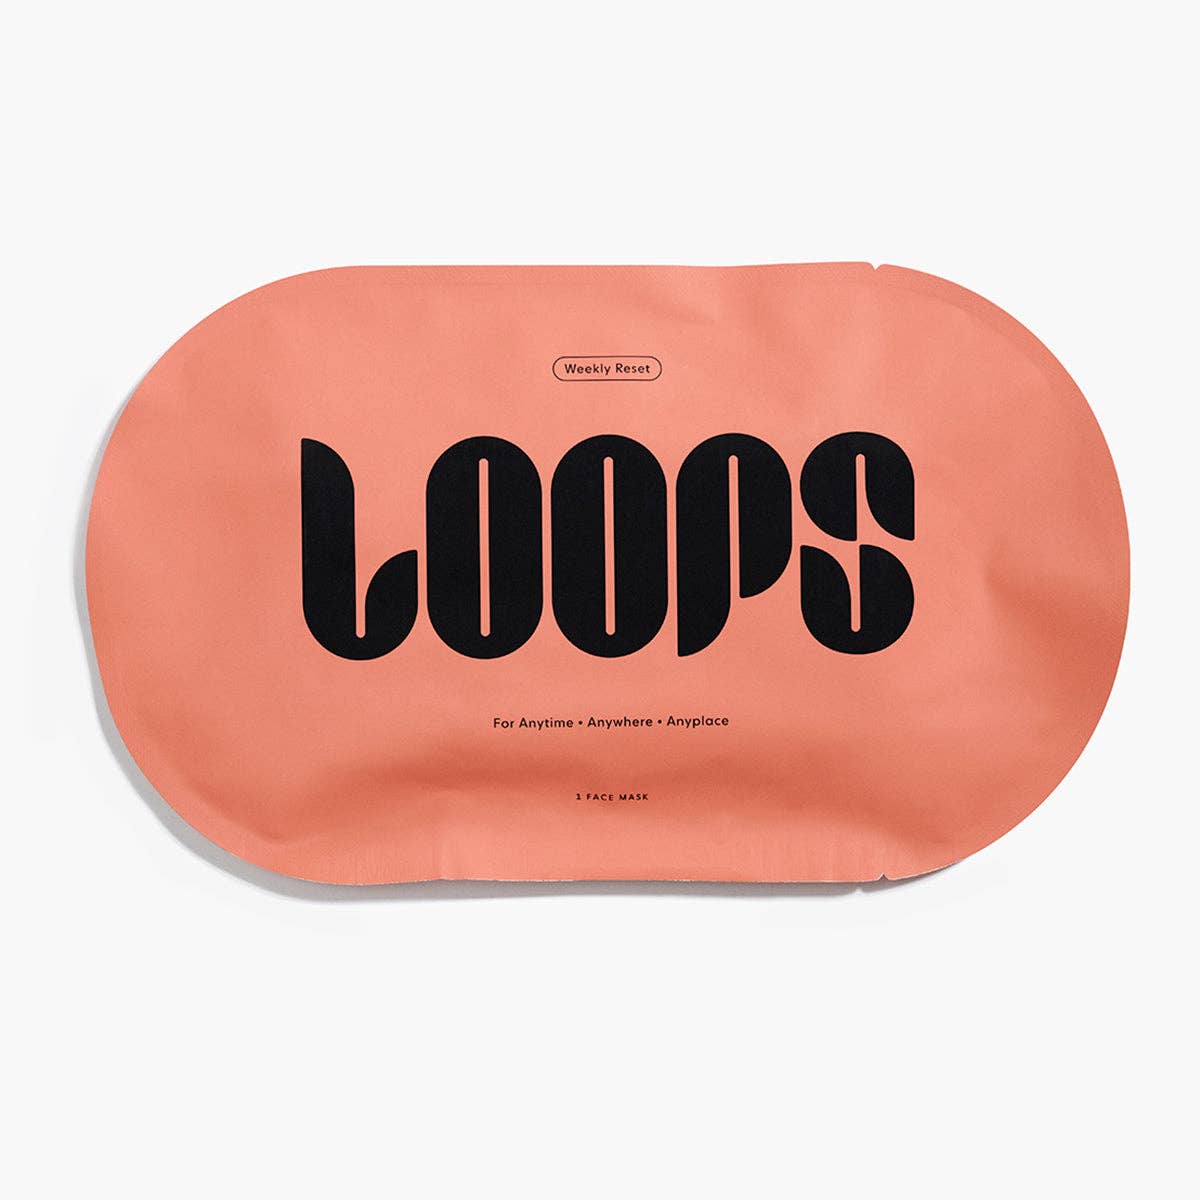 LOOPS- Weekly Reset Single Mask